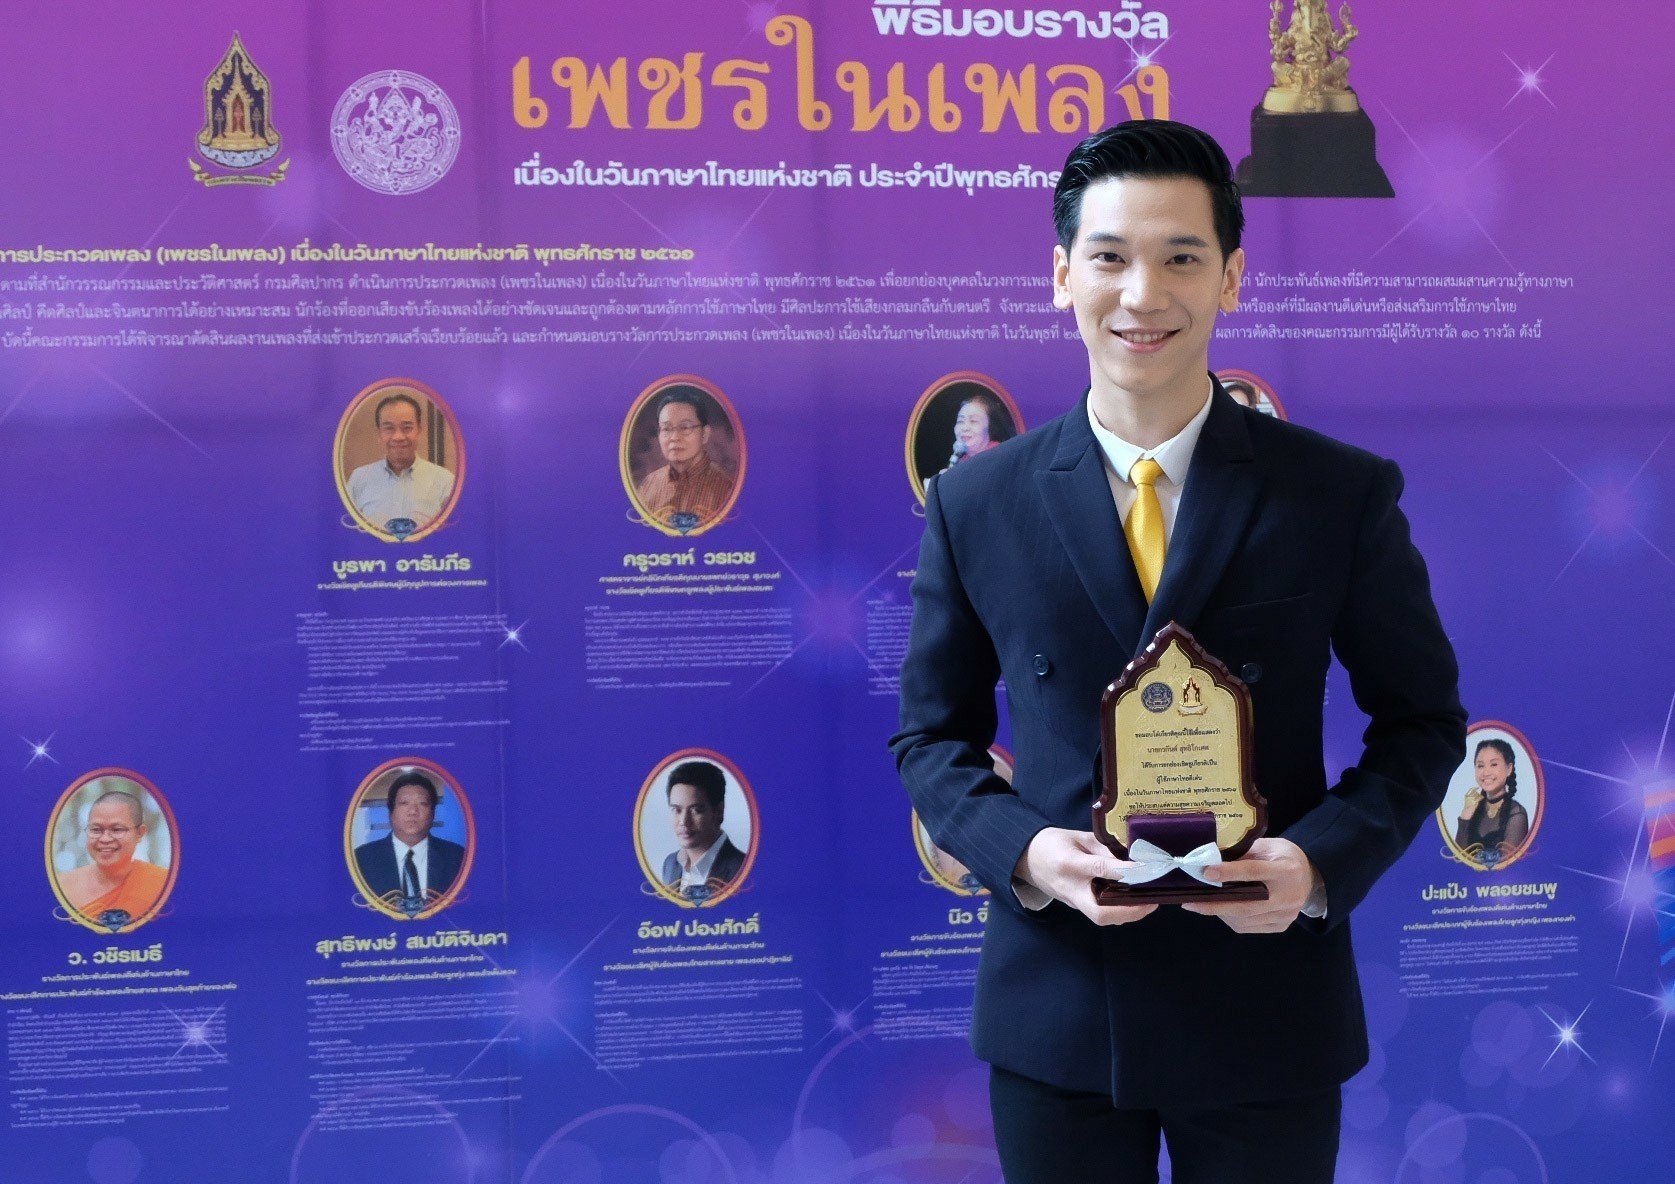 รางวัลผู้ใช้ภาษาไทยดีเด่น เนื่องในวันภาษาไทยแห่งชาติ ประจำปี  2561